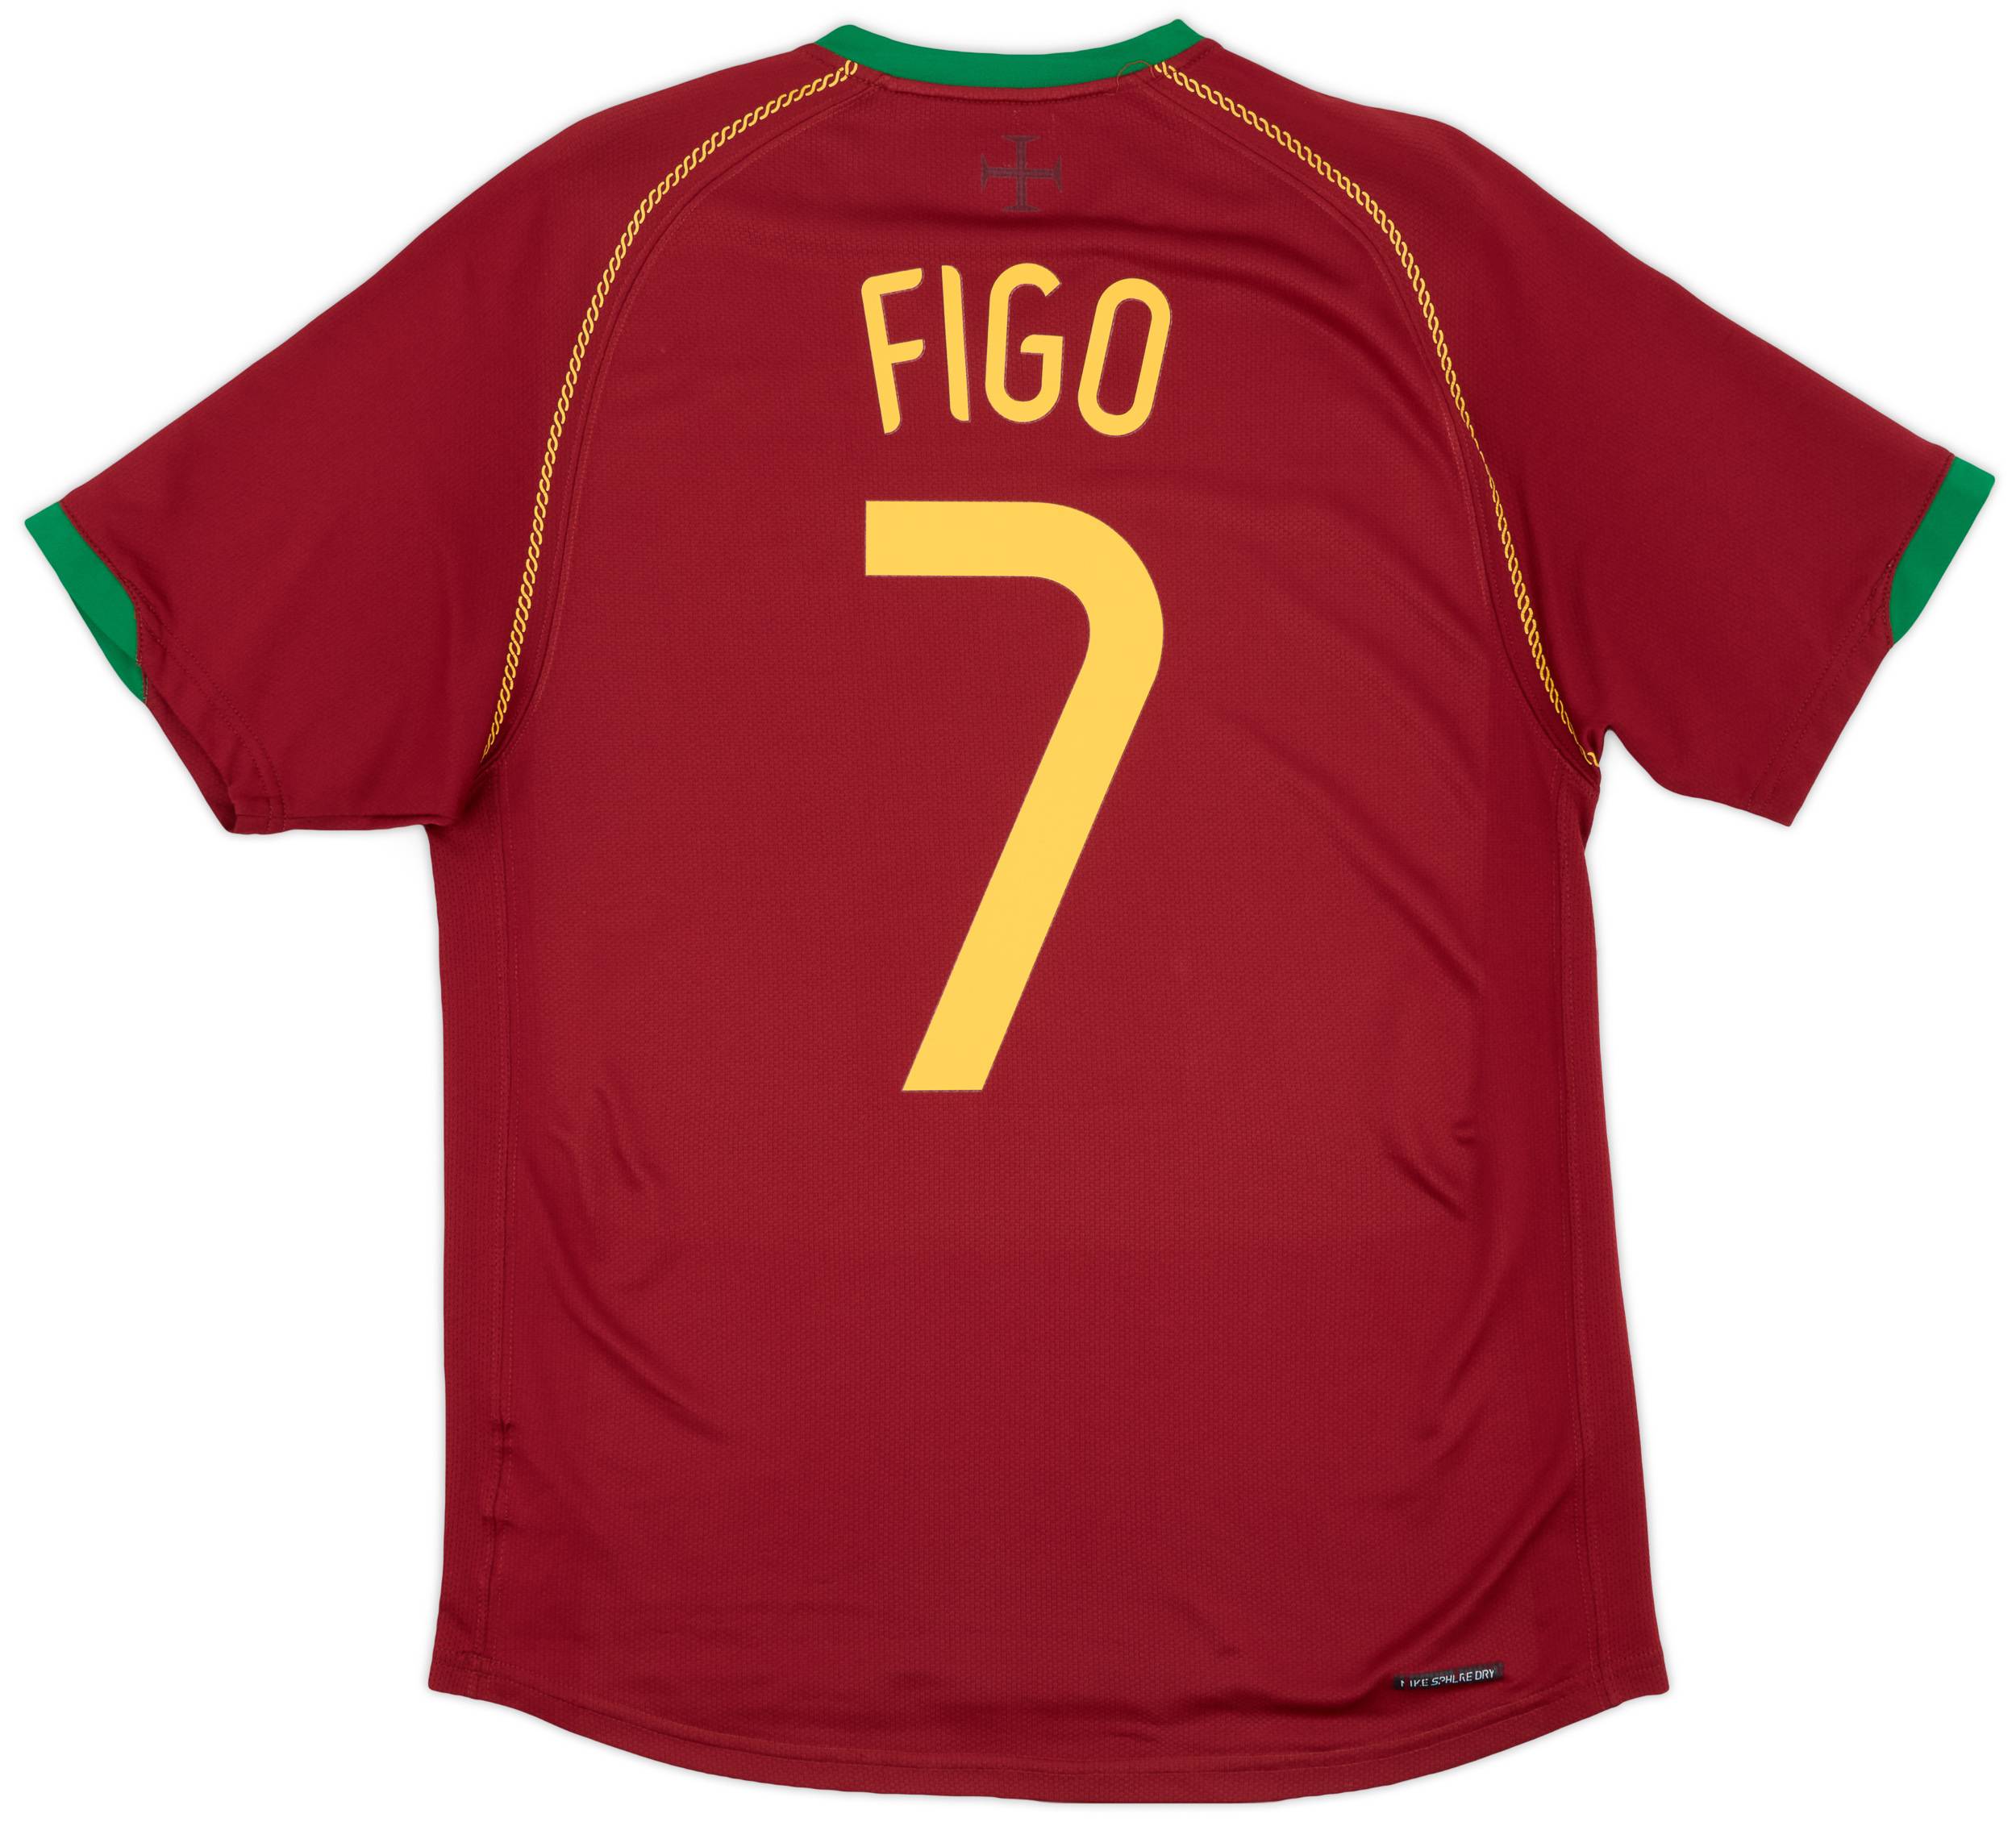 2006-08 Portugal Home Shirt Figo #7 - 7/10 - (M)